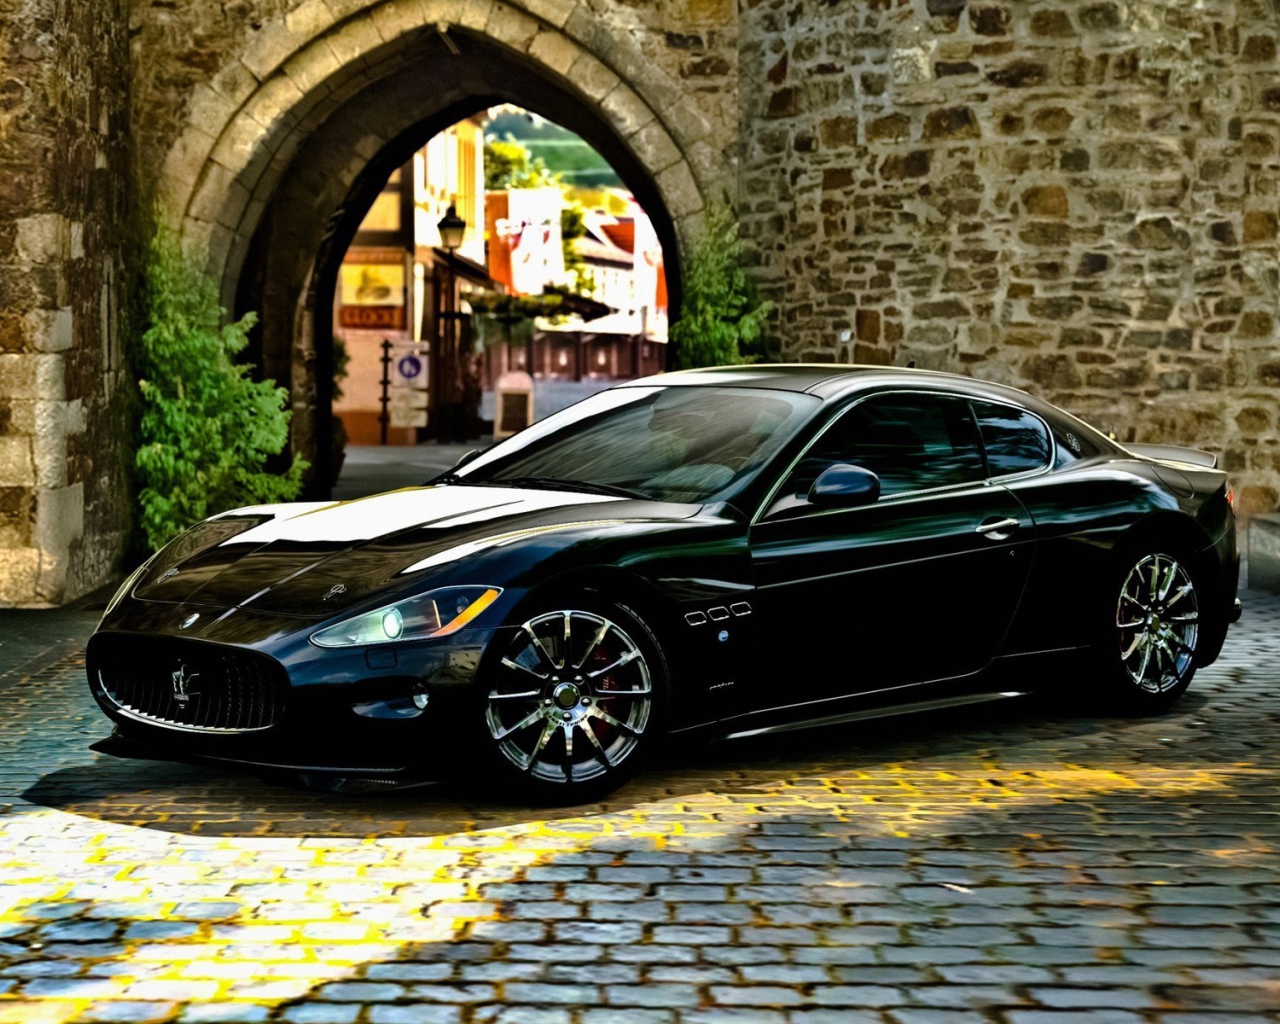 Черный Maserati gran turismo у каменной арки